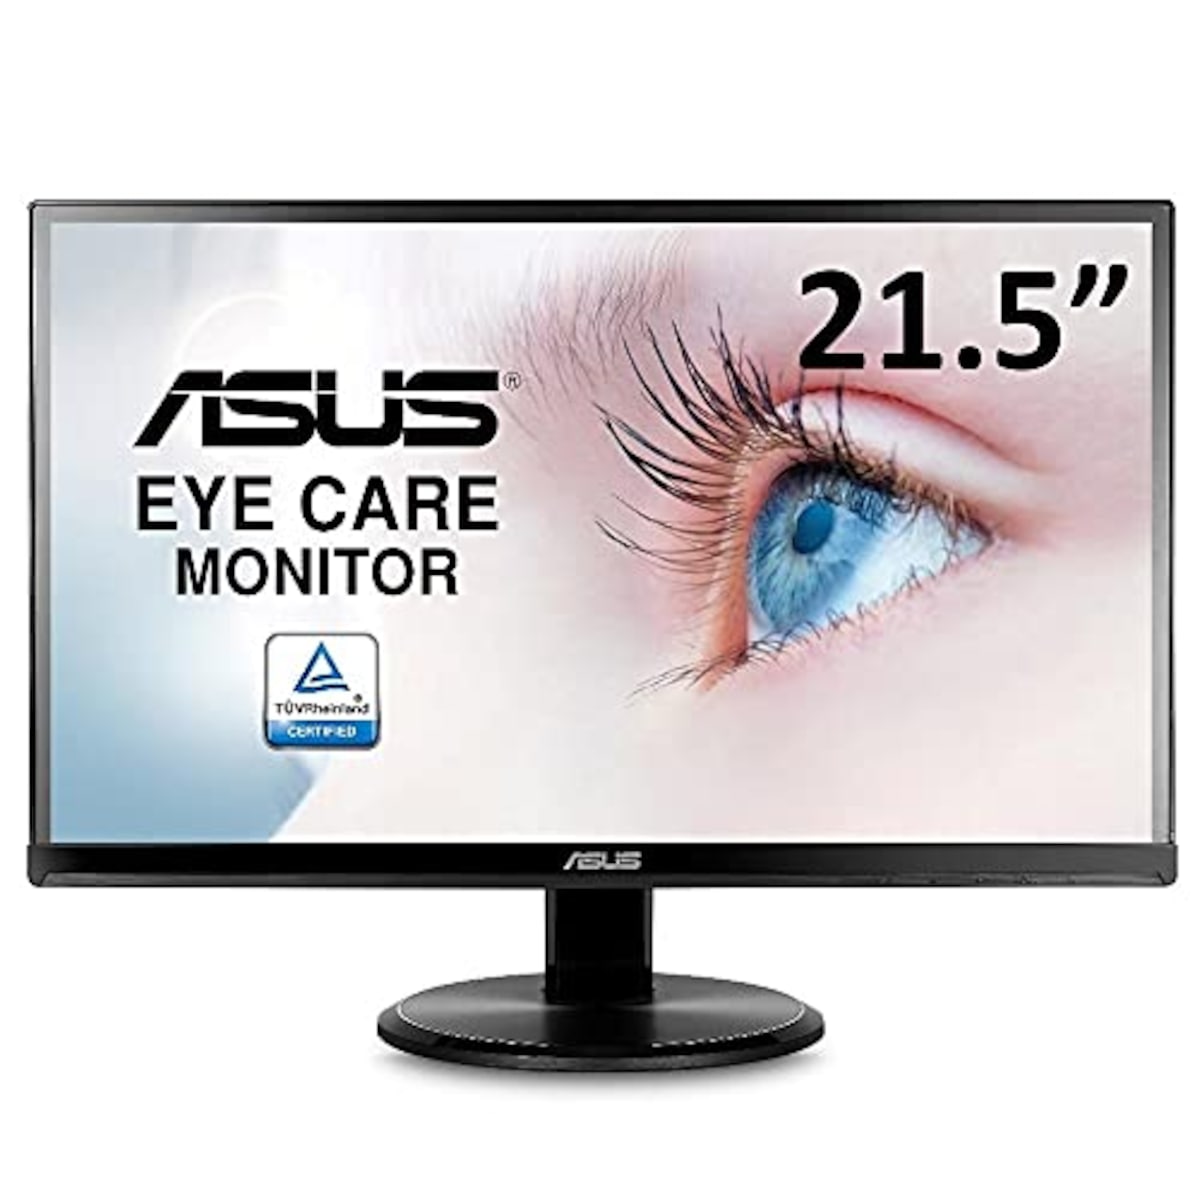 【Amazon.co.jp限定】ASUS モニター Eye Care VA229HR 21.5インチ FHD 1080p /フルD/IPS/75Hz/HDMI,D-sub/ブルーライト軽減/フリッカフリー/VESA対応/スピーカー/3年保証